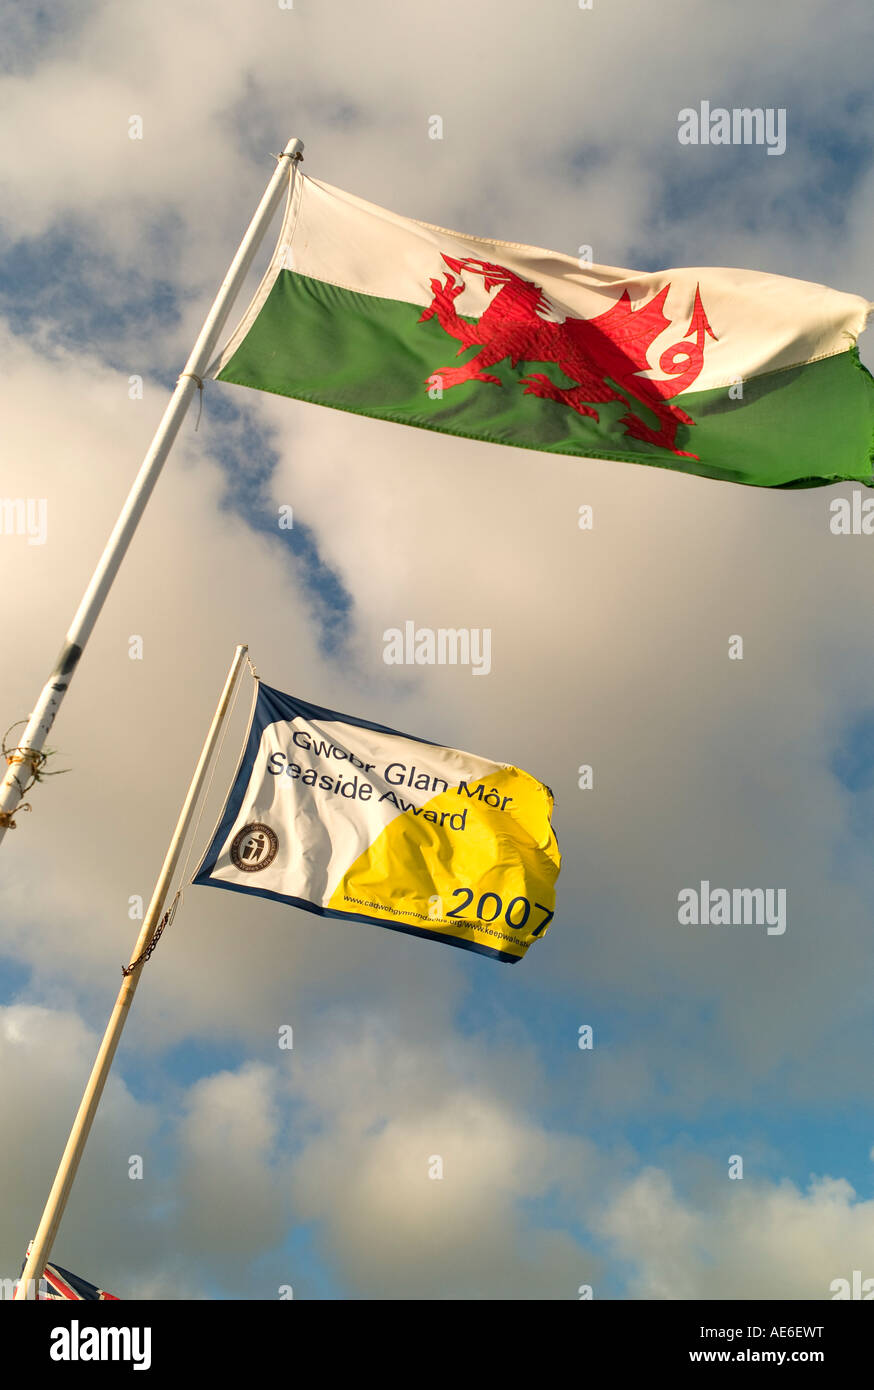 Garder au Pays de Galles Tidy 2007 Plage de qualité award banner et welsh dragon rouge flag flying Borth West Wales Banque D'Images